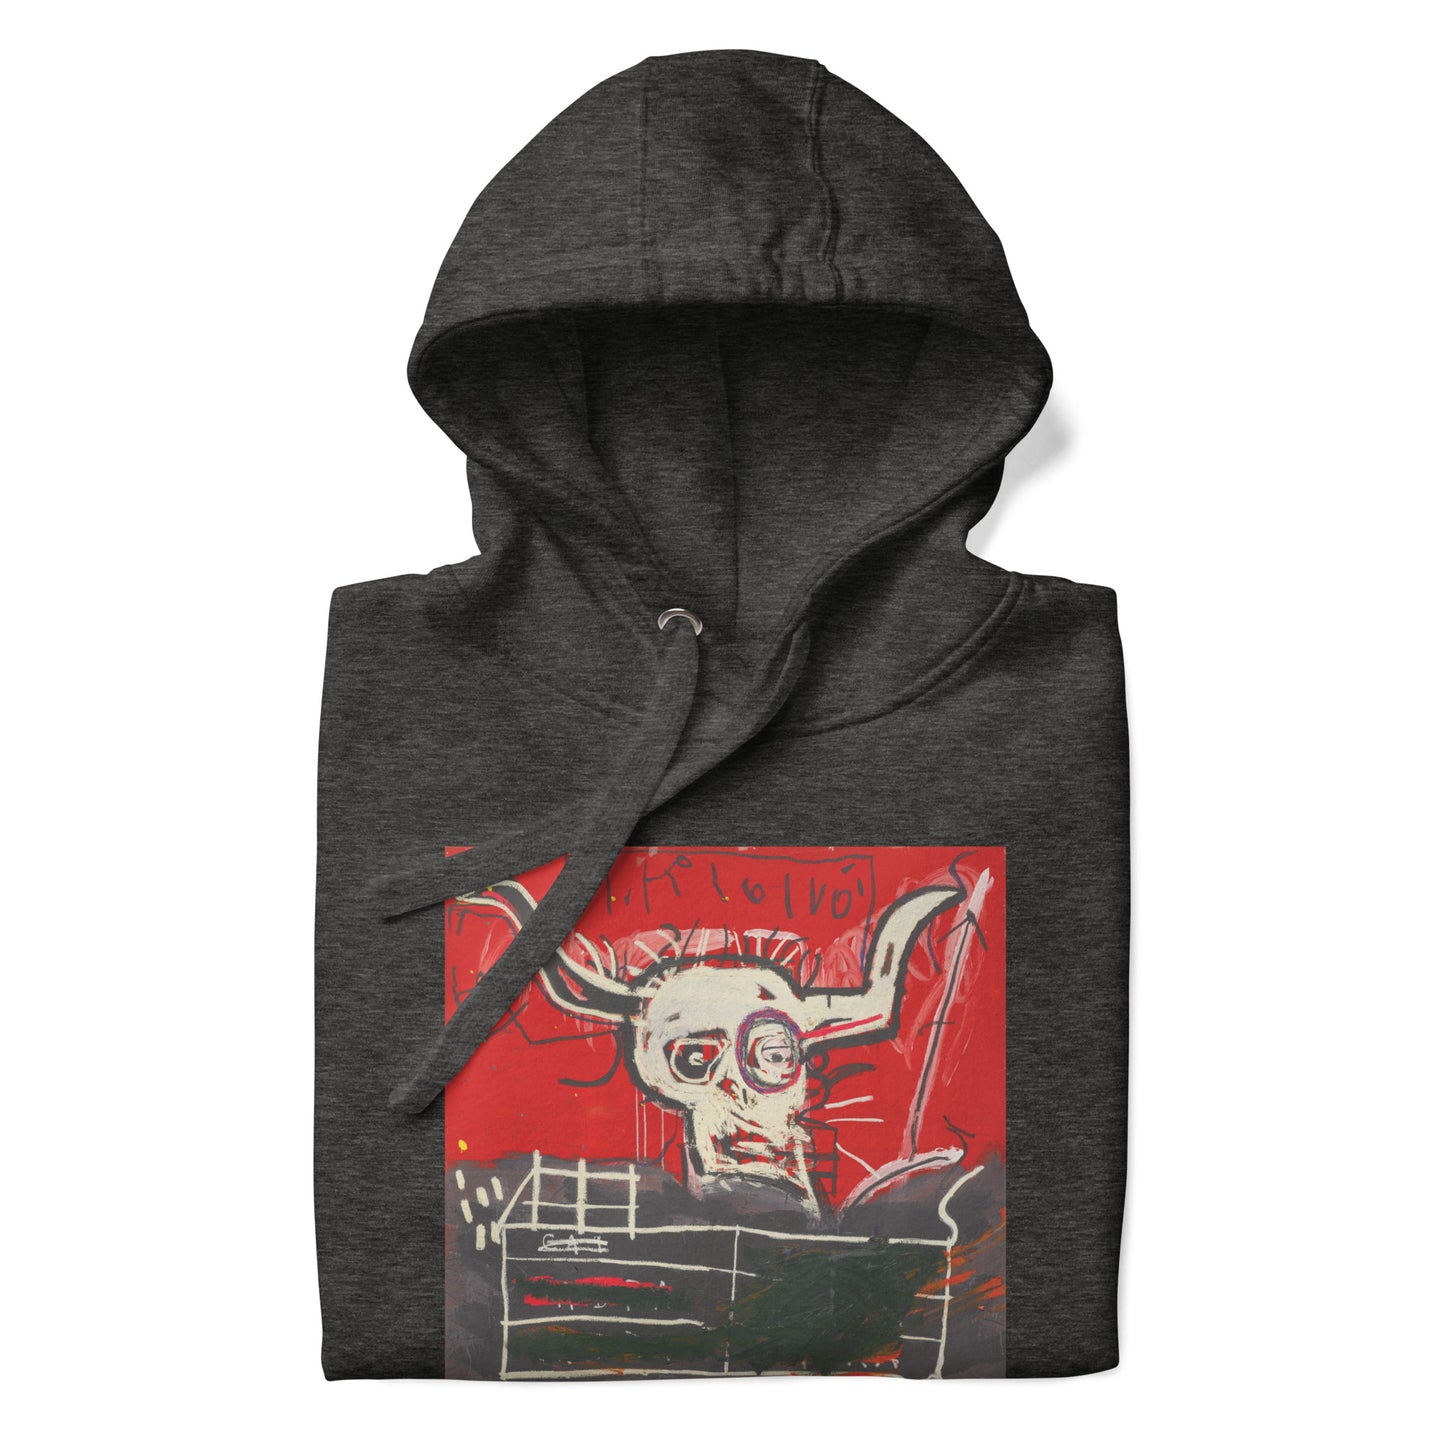 Jean-Michel Basquiat "Cabra" Artwork Printed Premium Streetwear Sweatshirt Hoodie Charcoal Grey